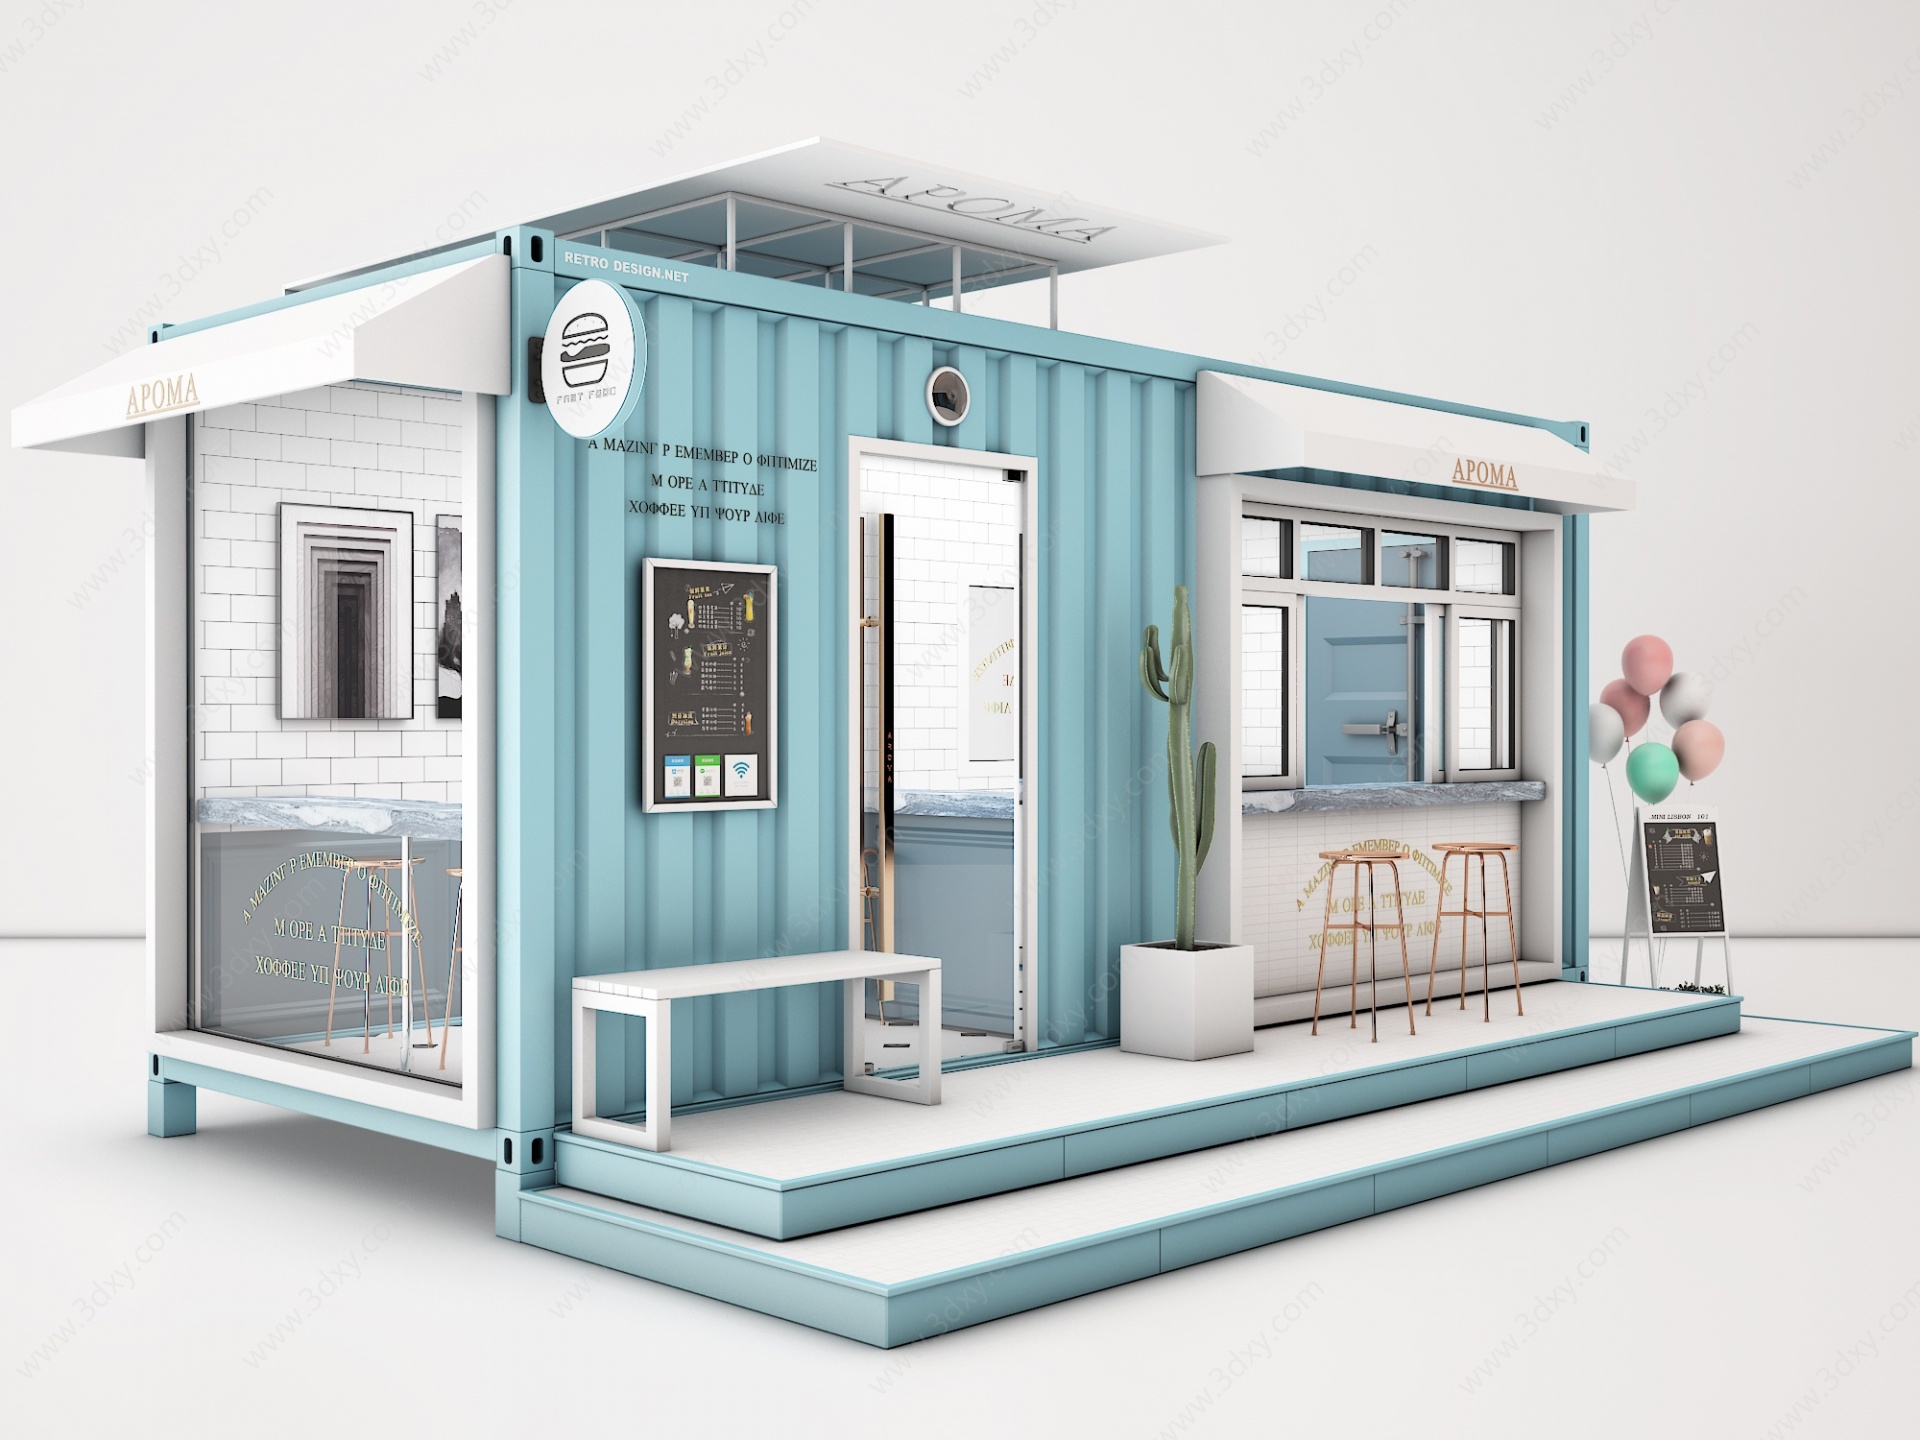 售货亭工业风集装箱快餐3D模型